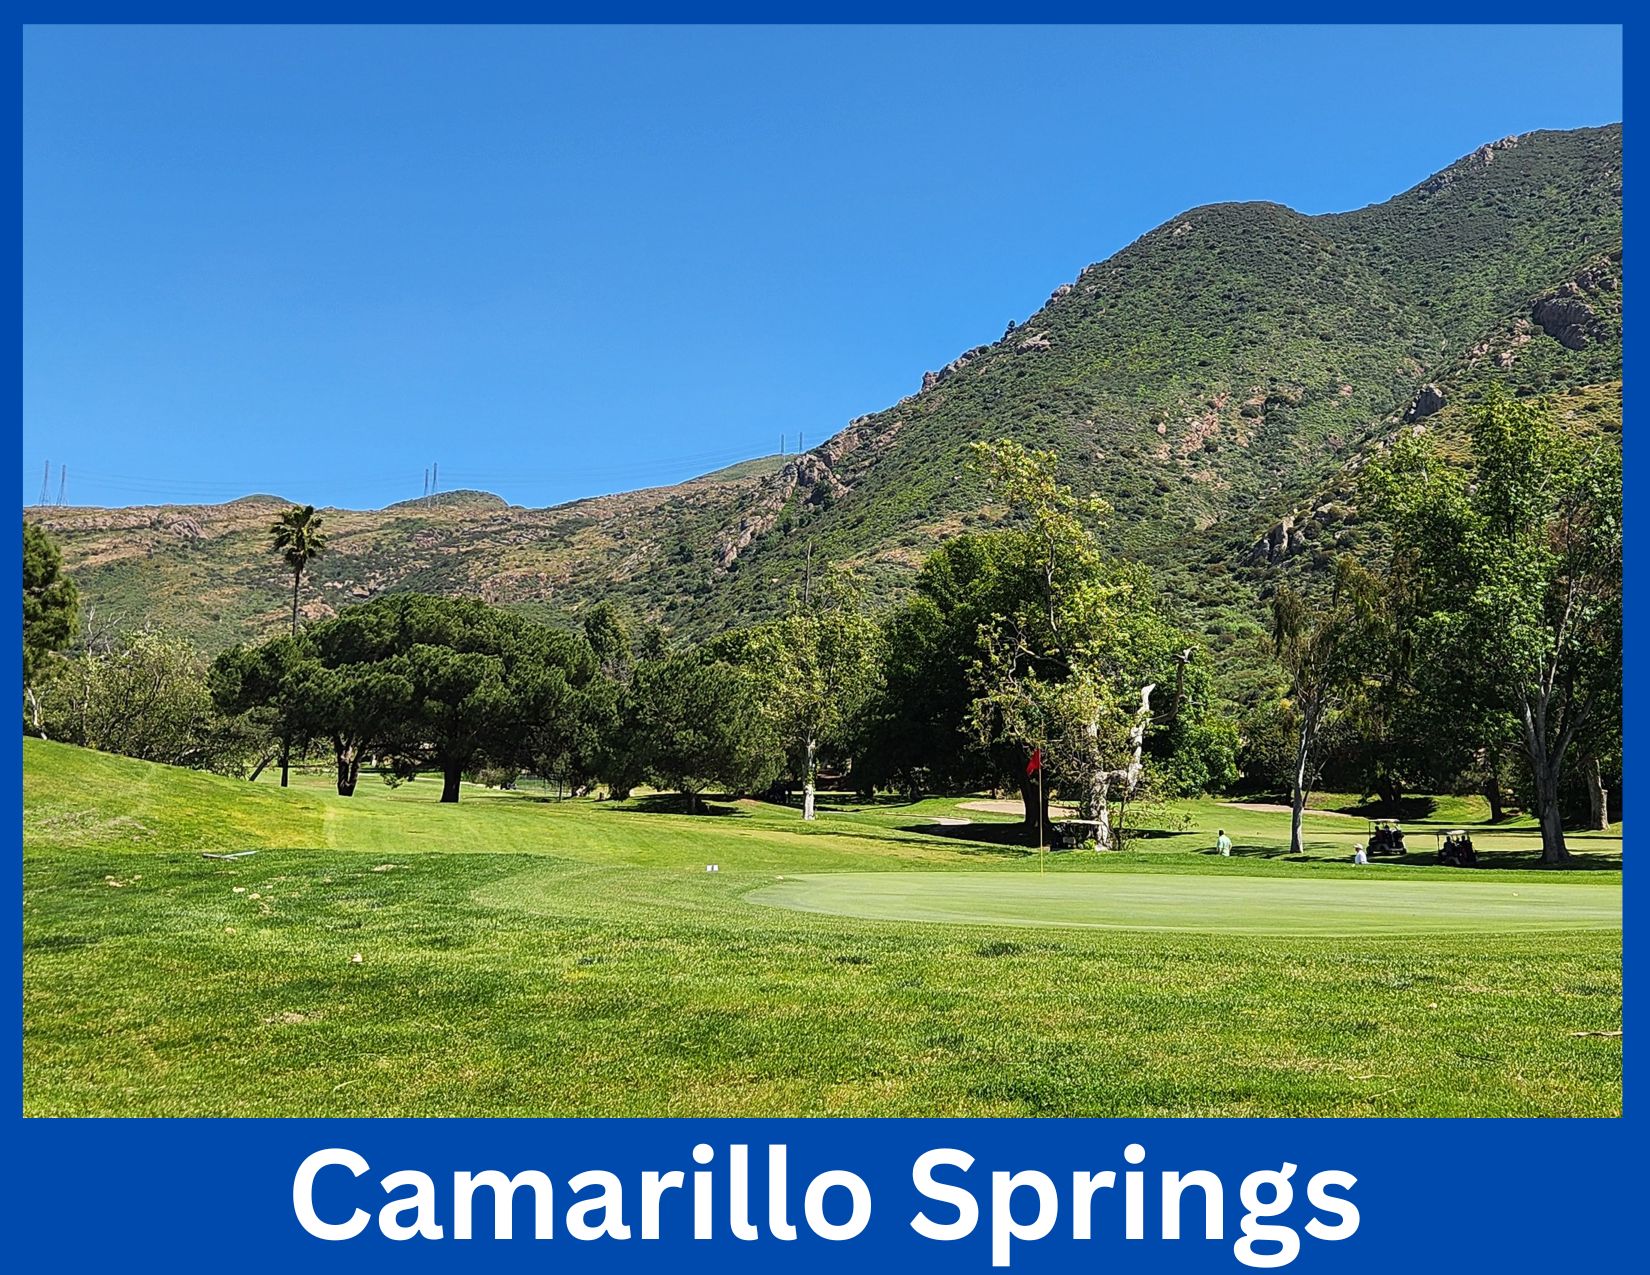 Camarillo Springs, Camarillo